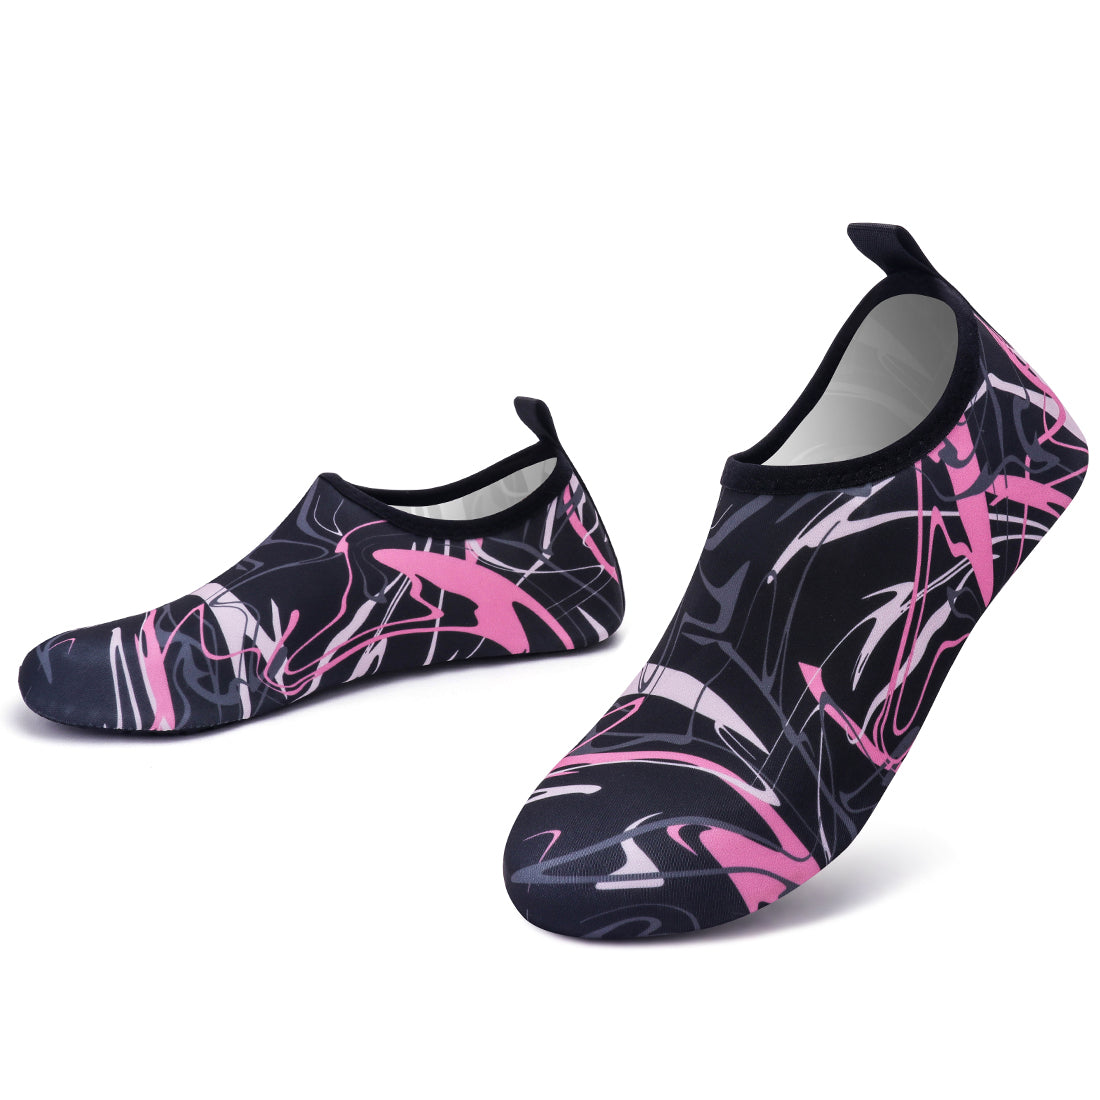 VIFUUR Water Sports Shoes for Men Women